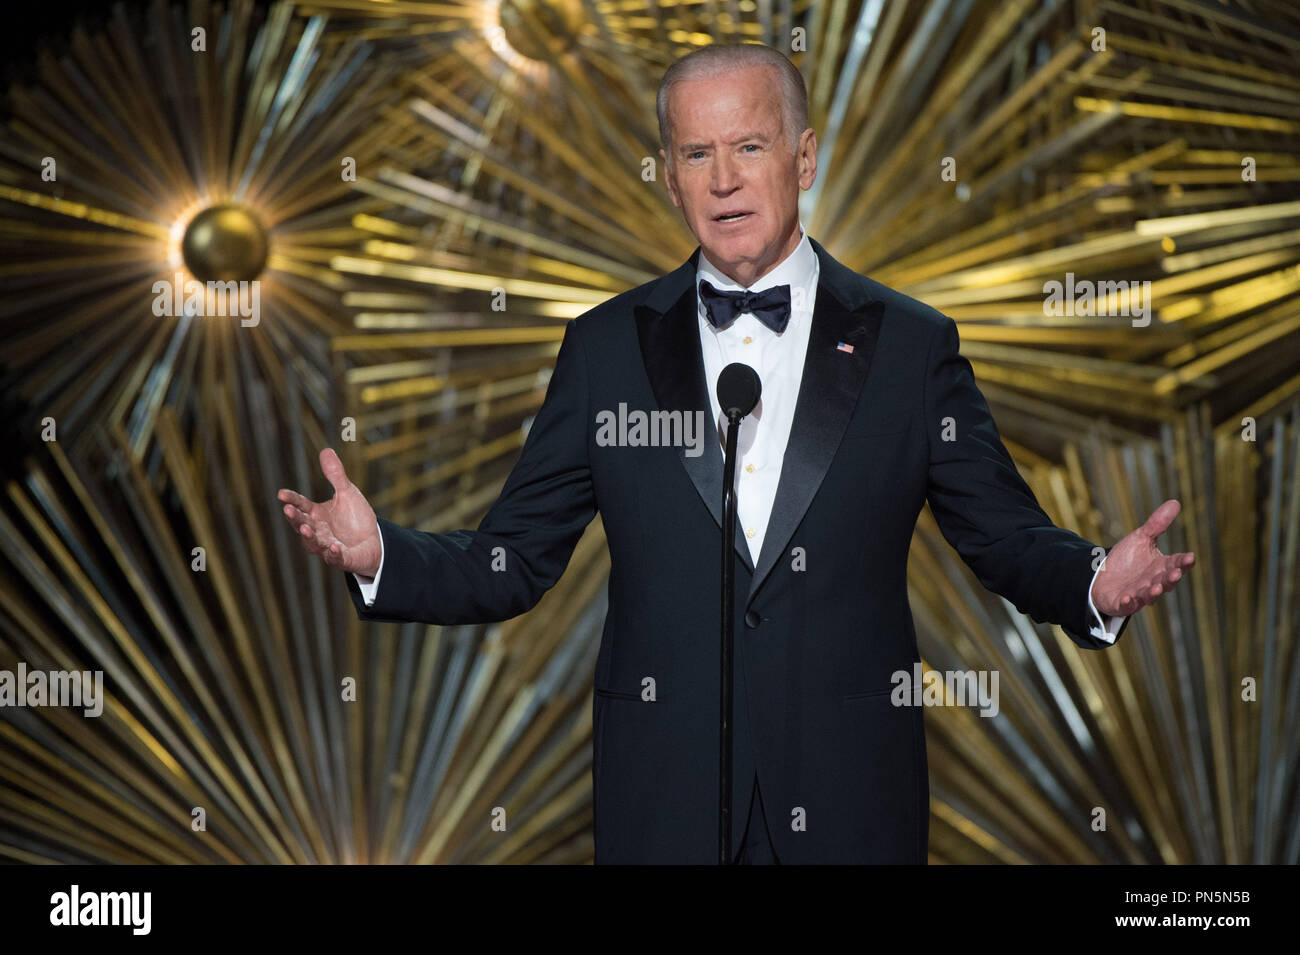 Le vice-président Joe Biden présente lors de la diffusion de l'ABC en direct 88e Oscars® au Dolby® Theatre à Hollywood, CA le Dimanche, Février 28, 2016. Référence #  32854 Fichier 573THA pour un usage éditorial uniquement - Tous droits réservés Banque D'Images